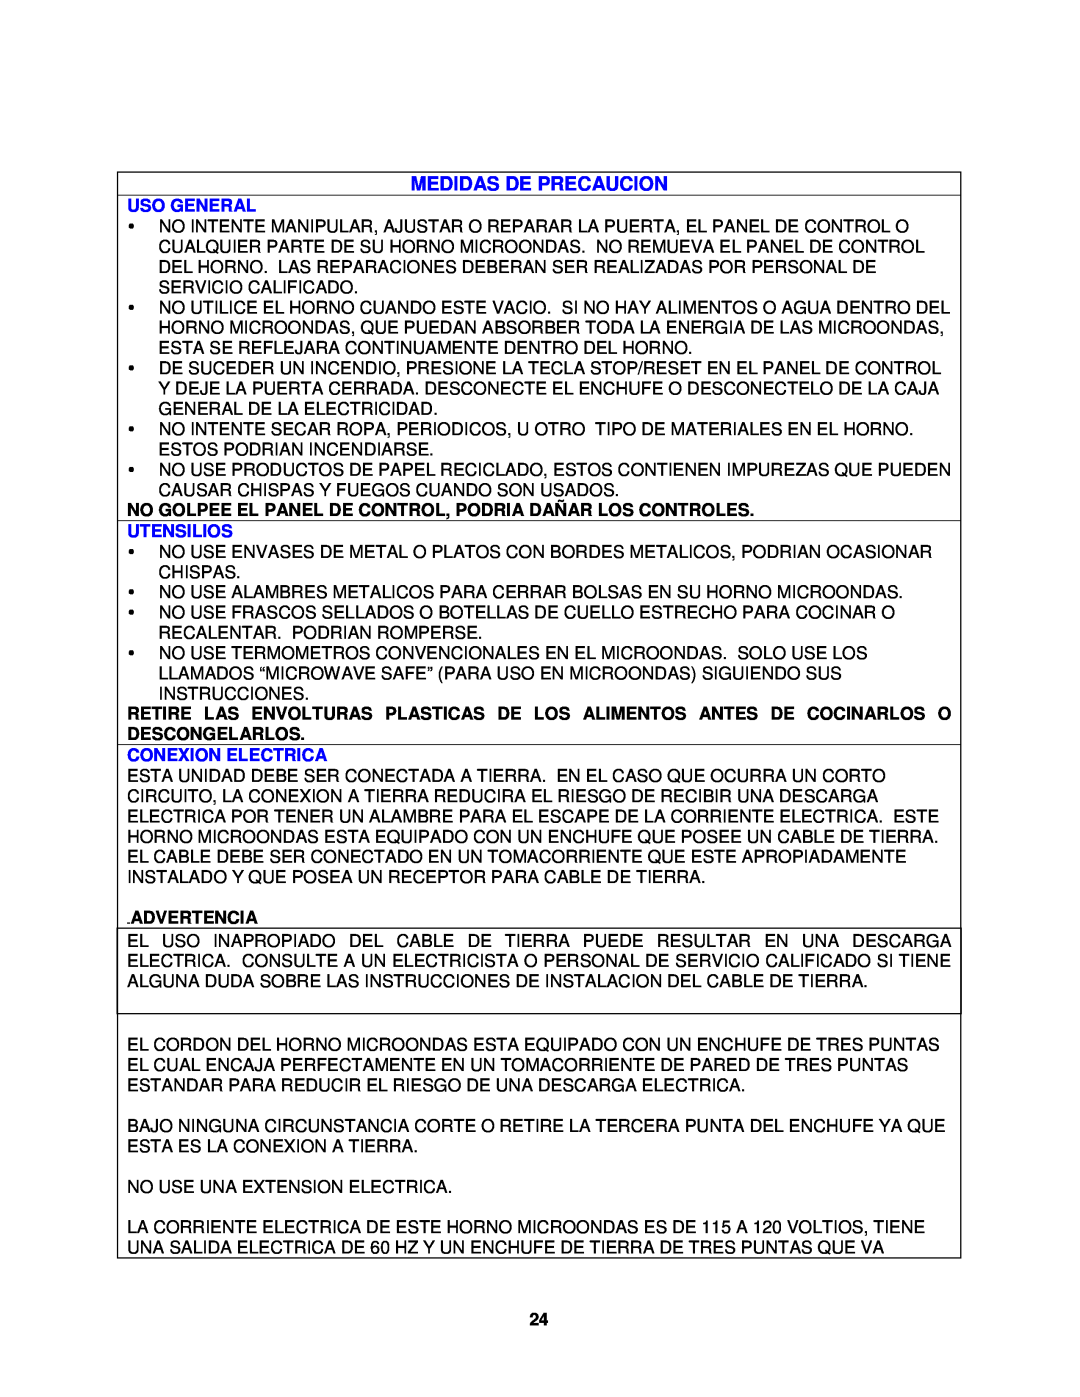 Avanti MO1450TW specifications Medidas De Precaucion, Uso General, Utensilios, Conexion Electrica, Advertencia 